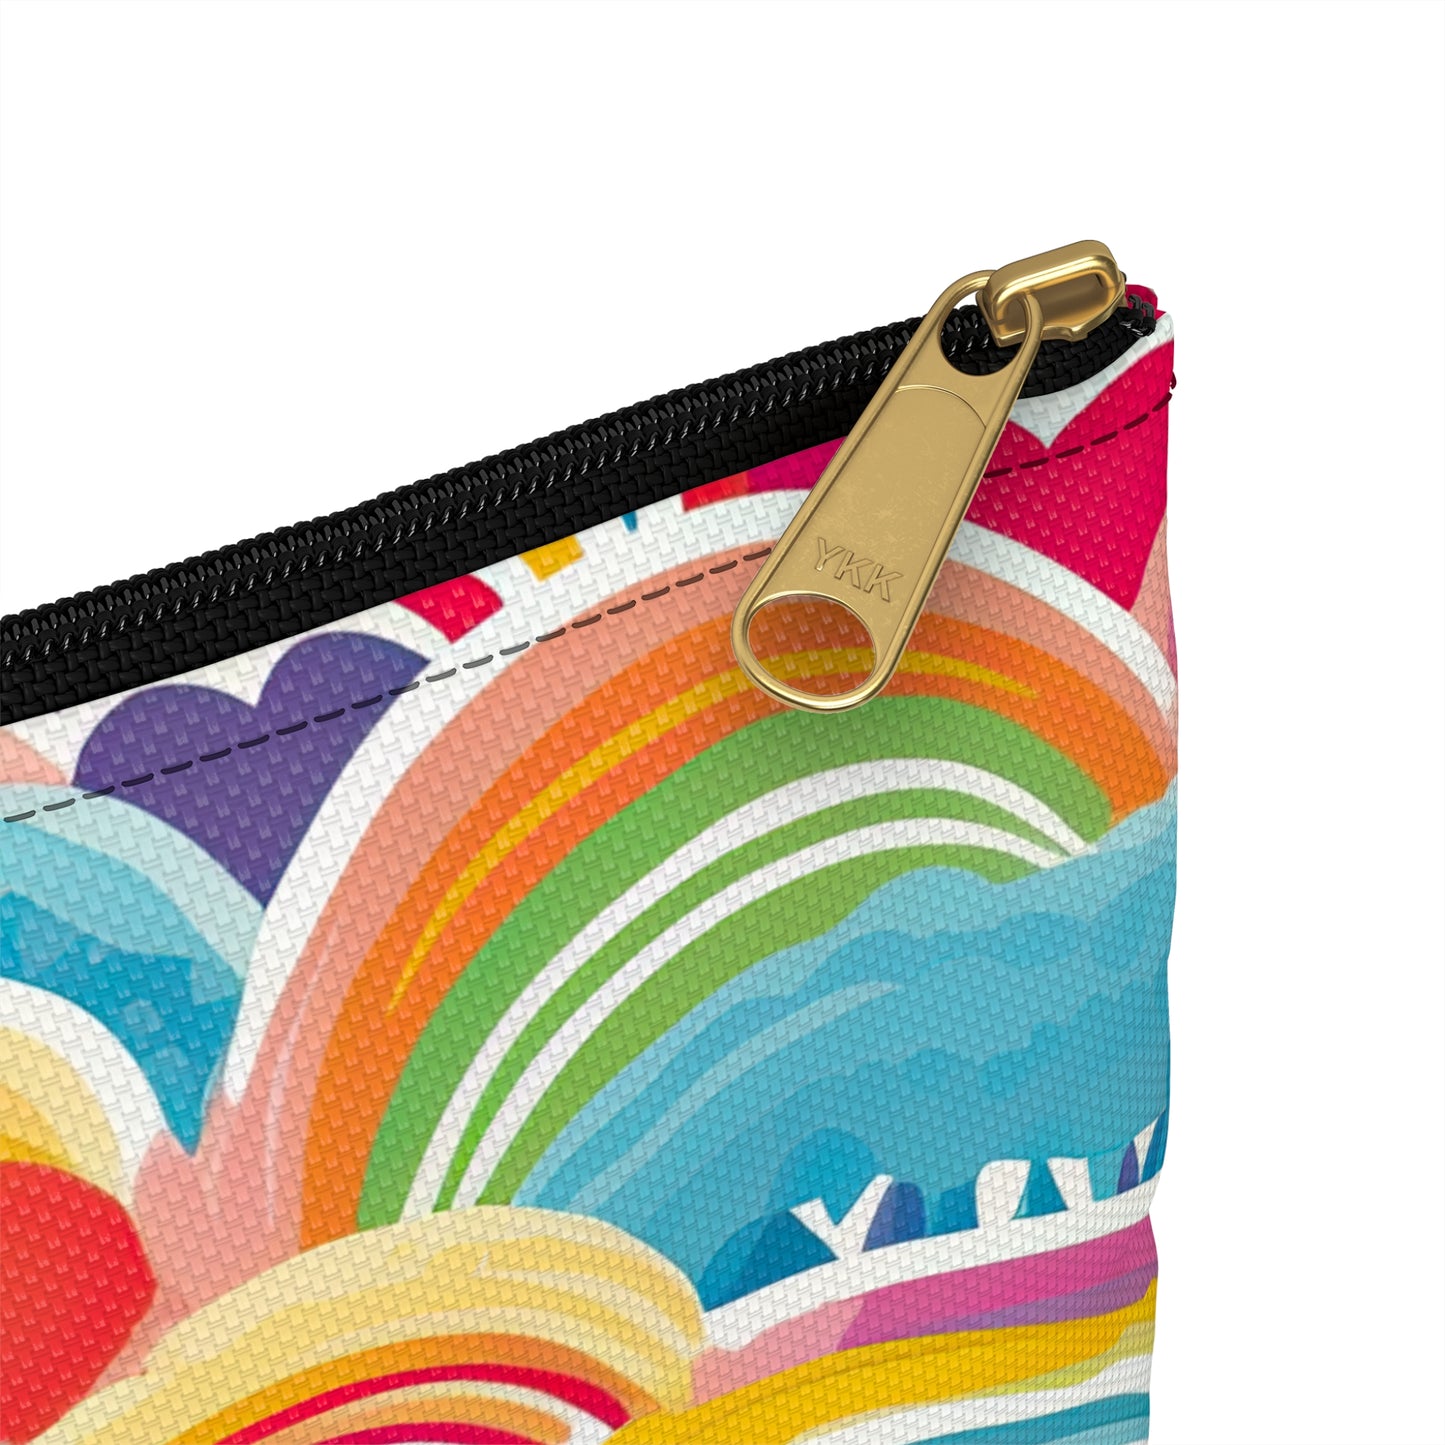 Rainbow Accessory Pouch / Makeup Case / Travel Pouch / Pencil Case / Art Case